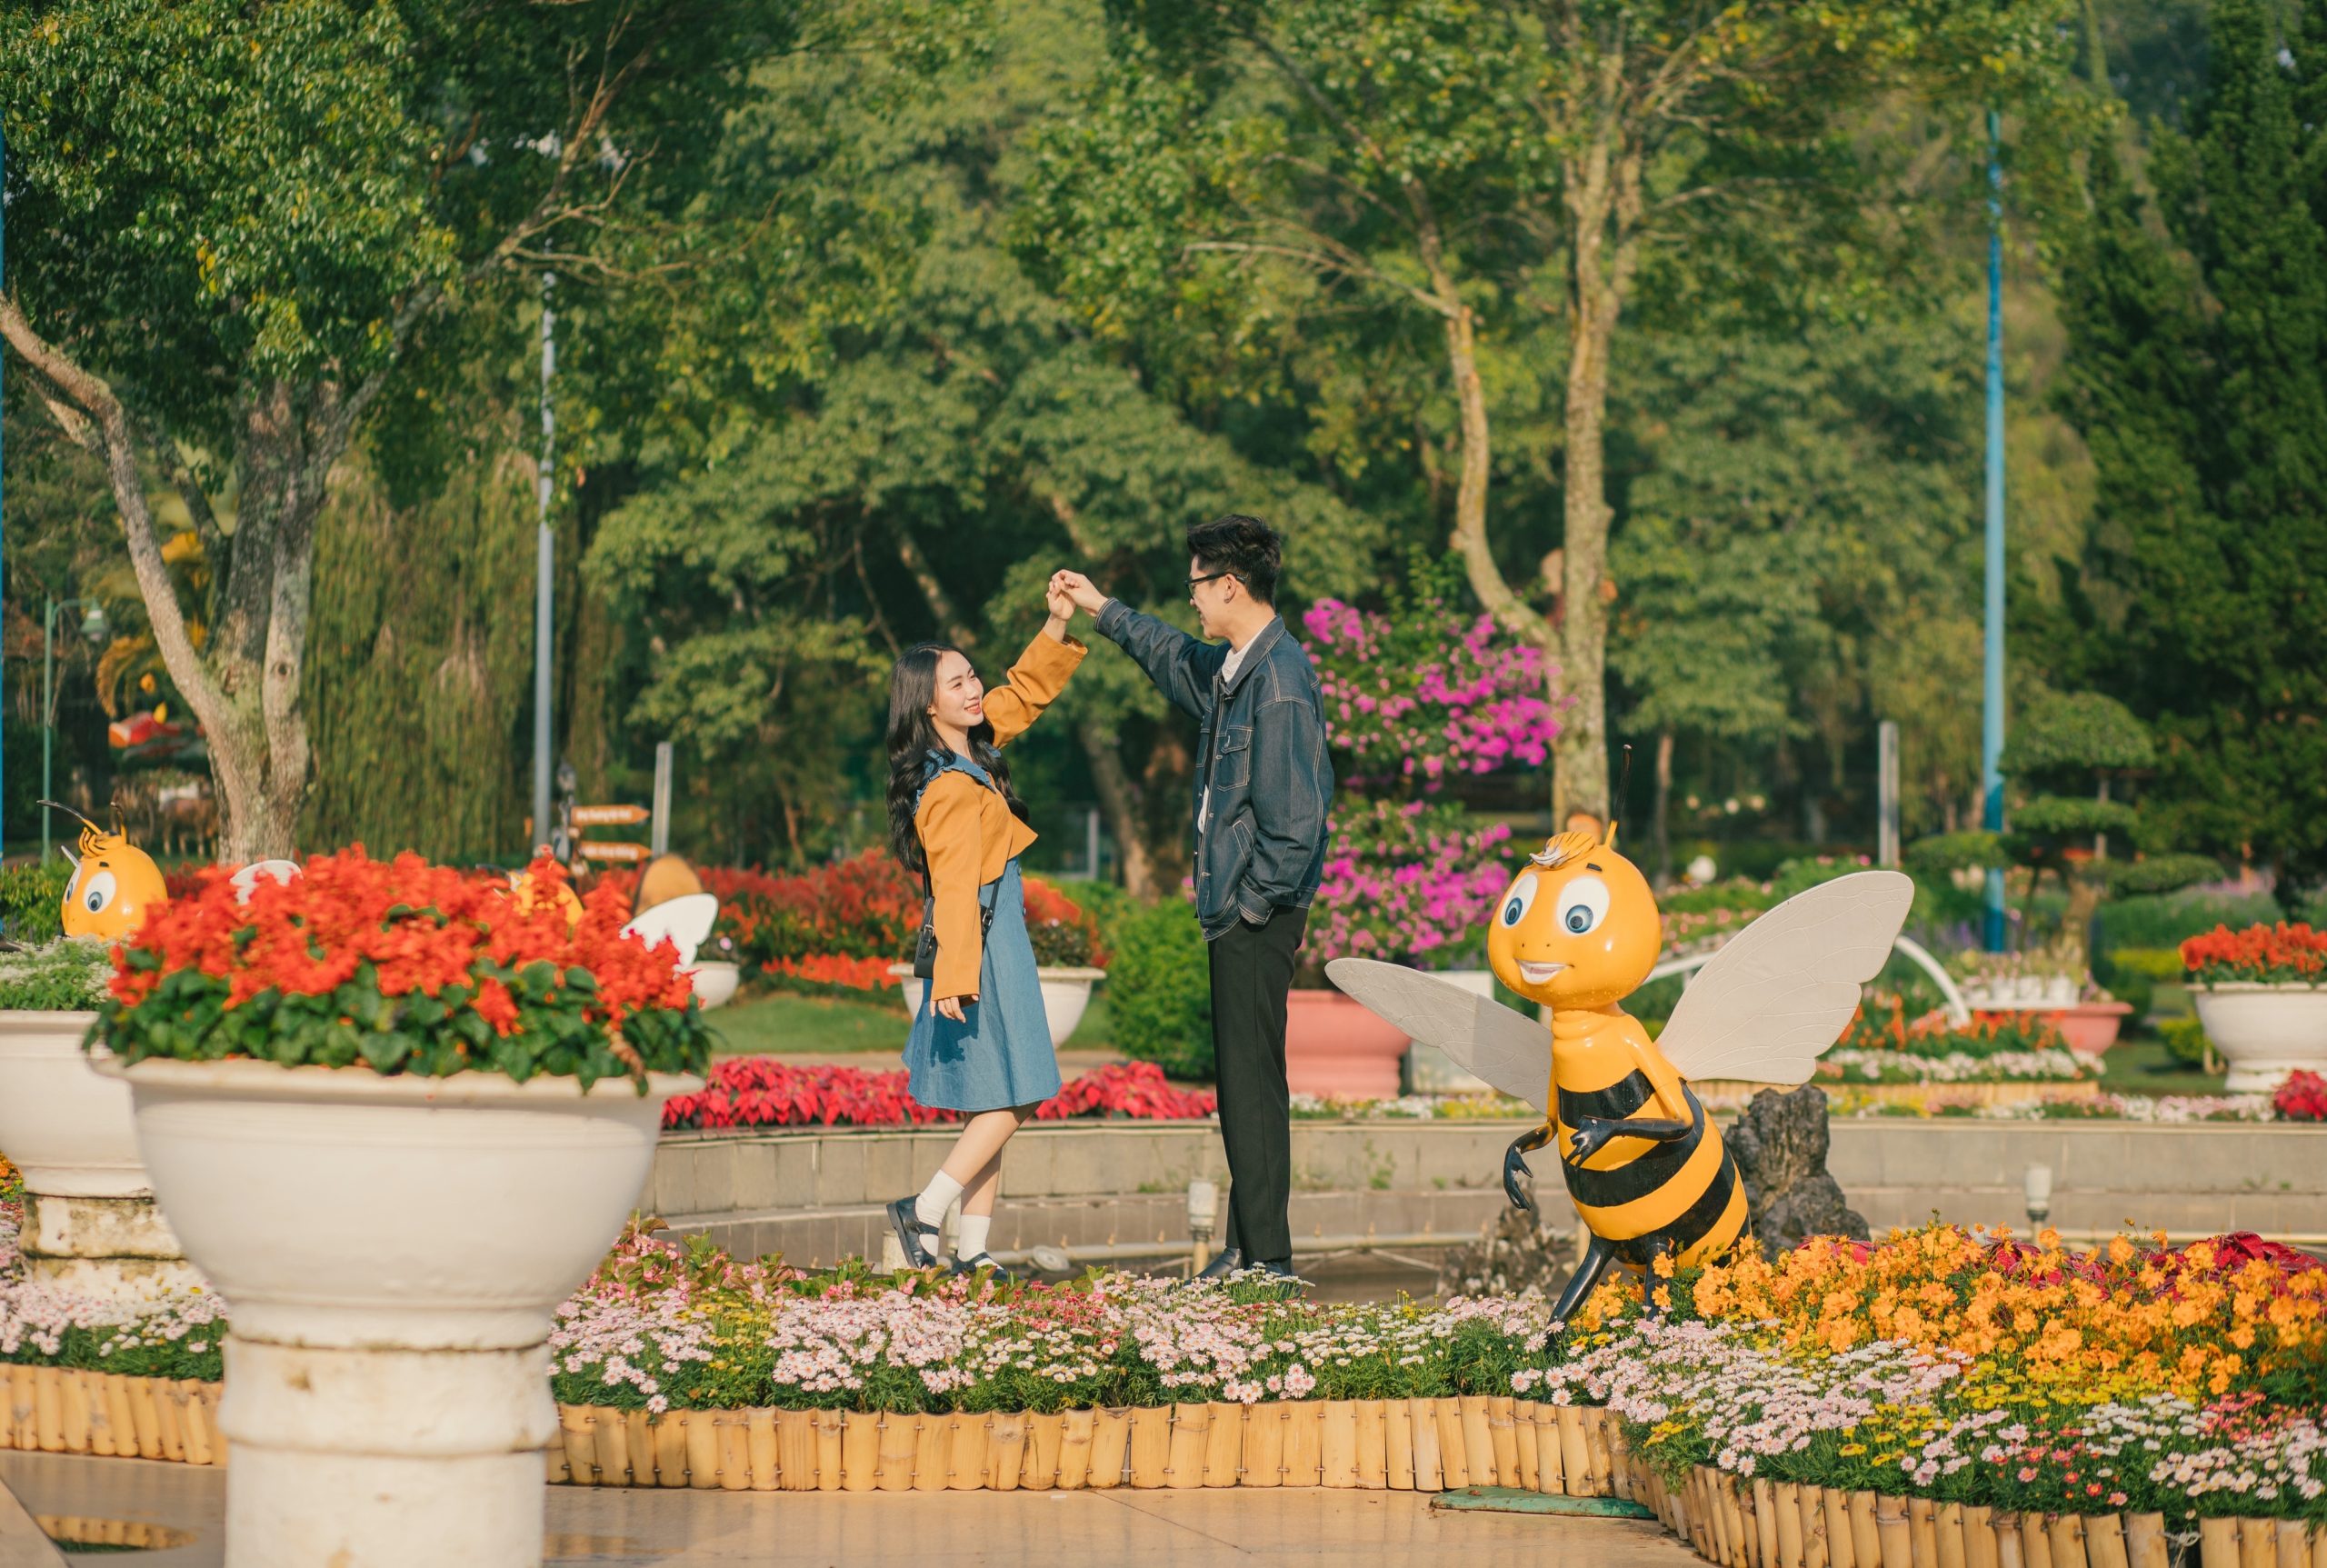 chụp ảnh couple tại vườn hoa thành phố